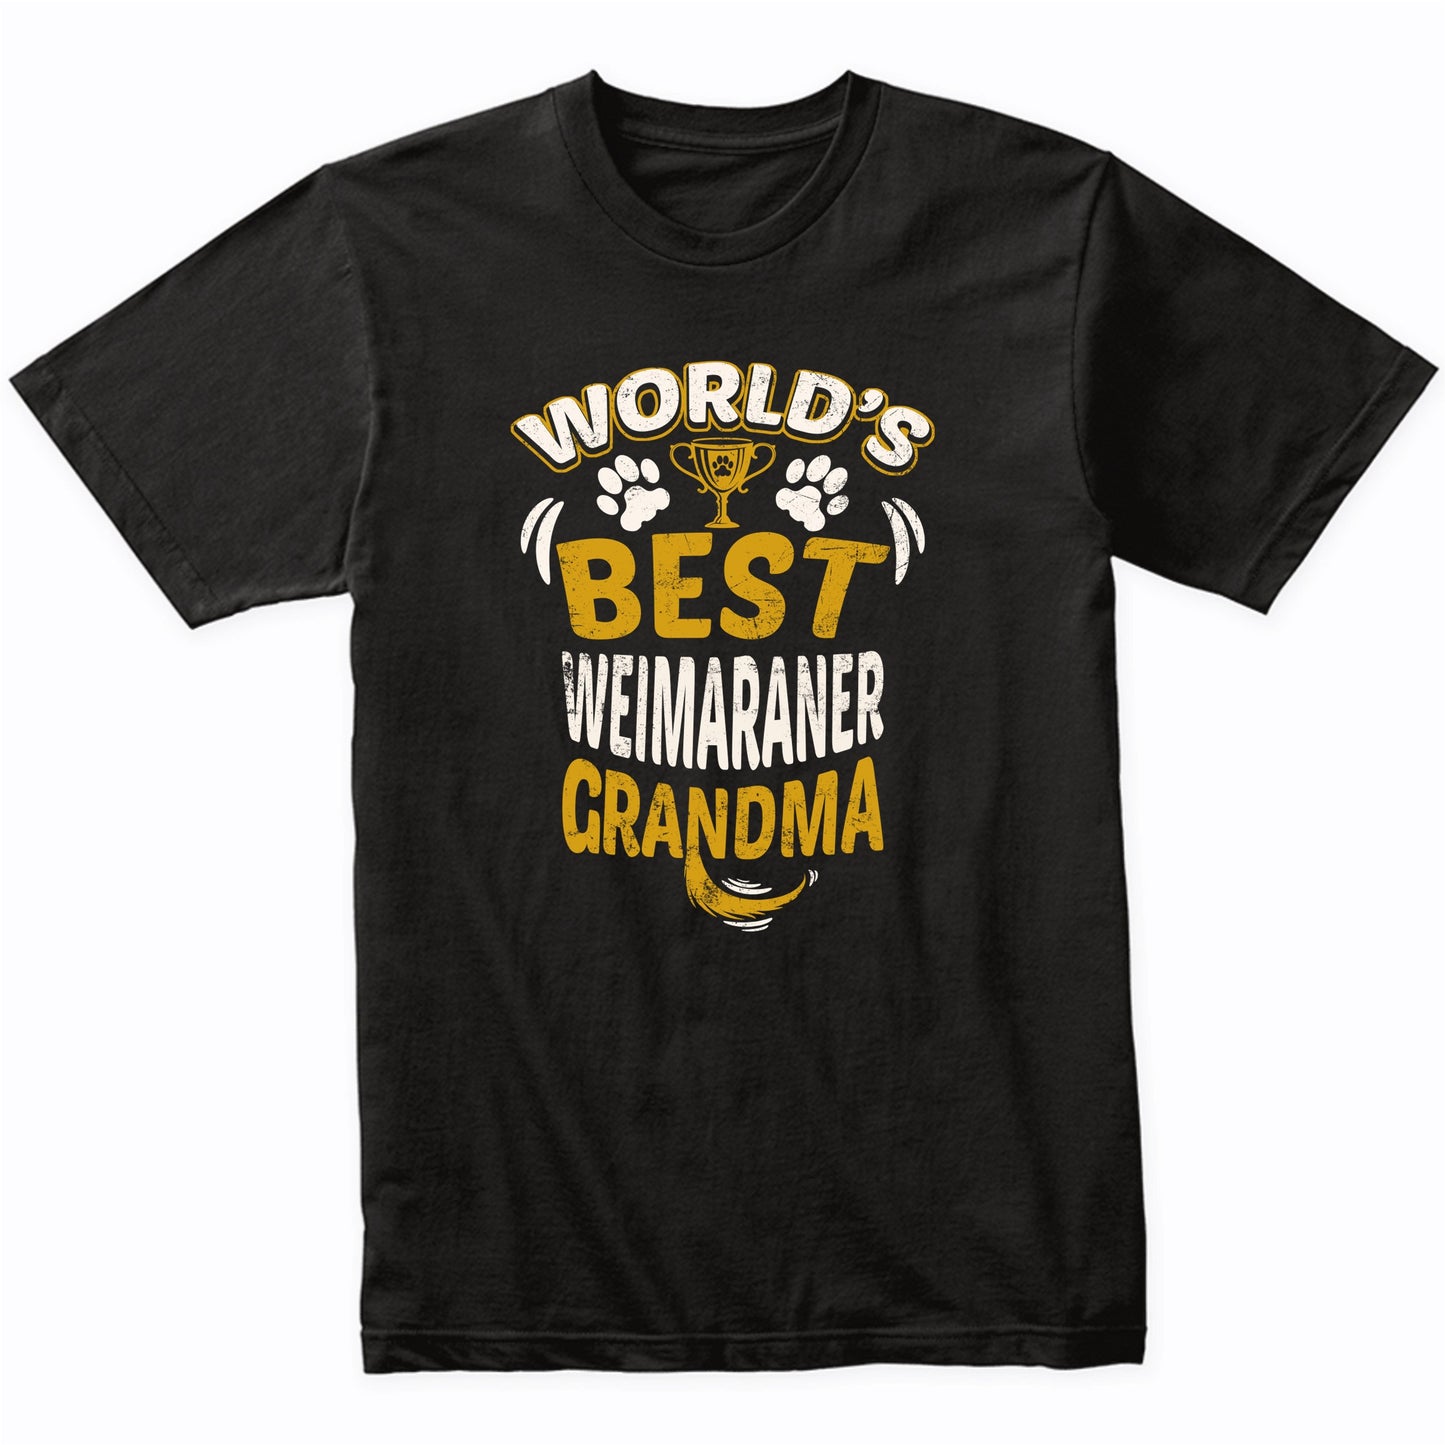 World's Best Weimaraner Grandma Graphic T-Shirt